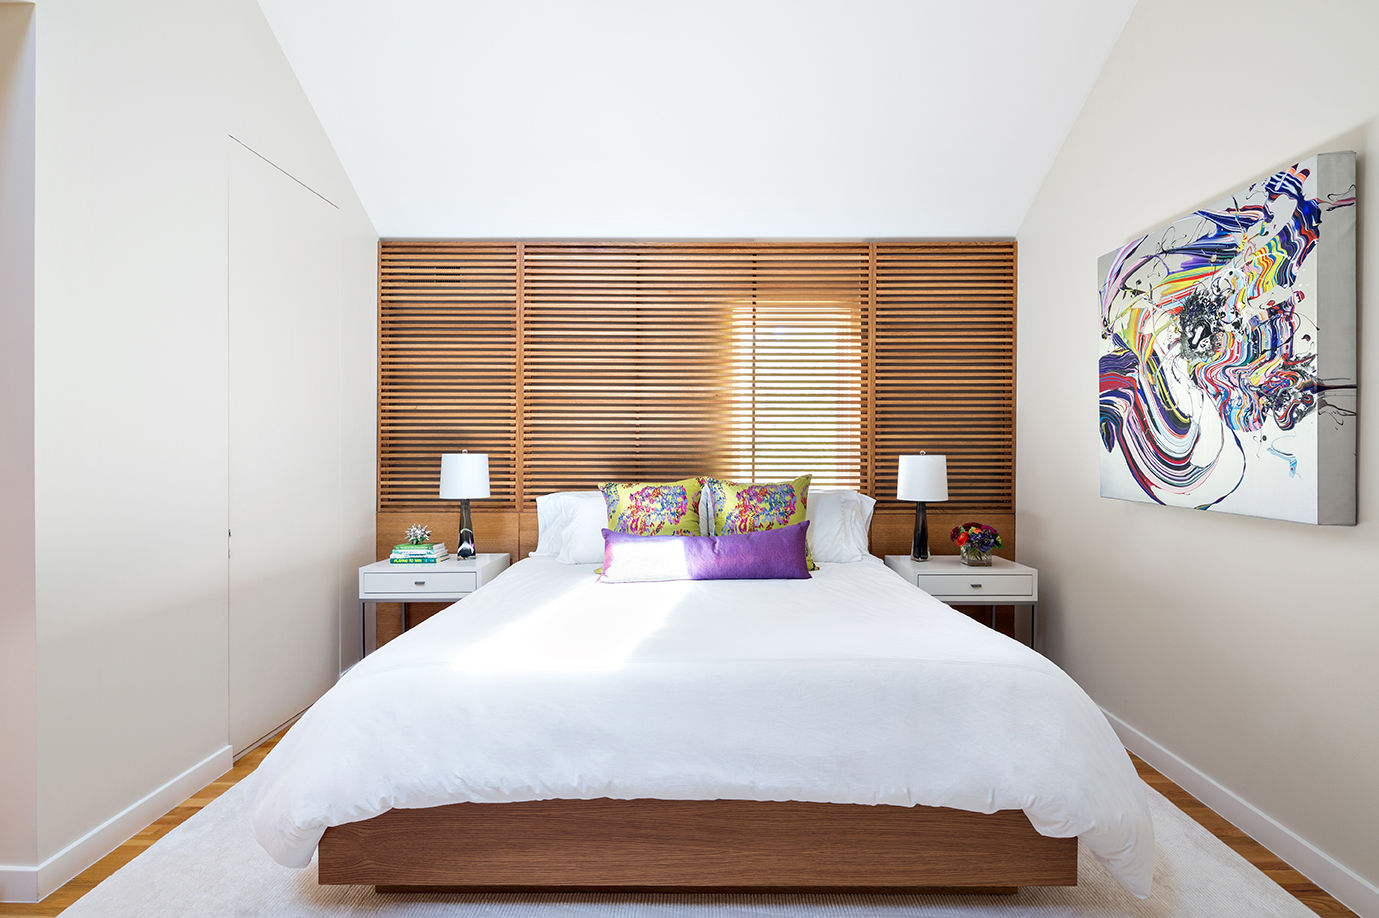 20 Schlafzimmer, die dich dazu inspirieren, deines zu verschönern ...